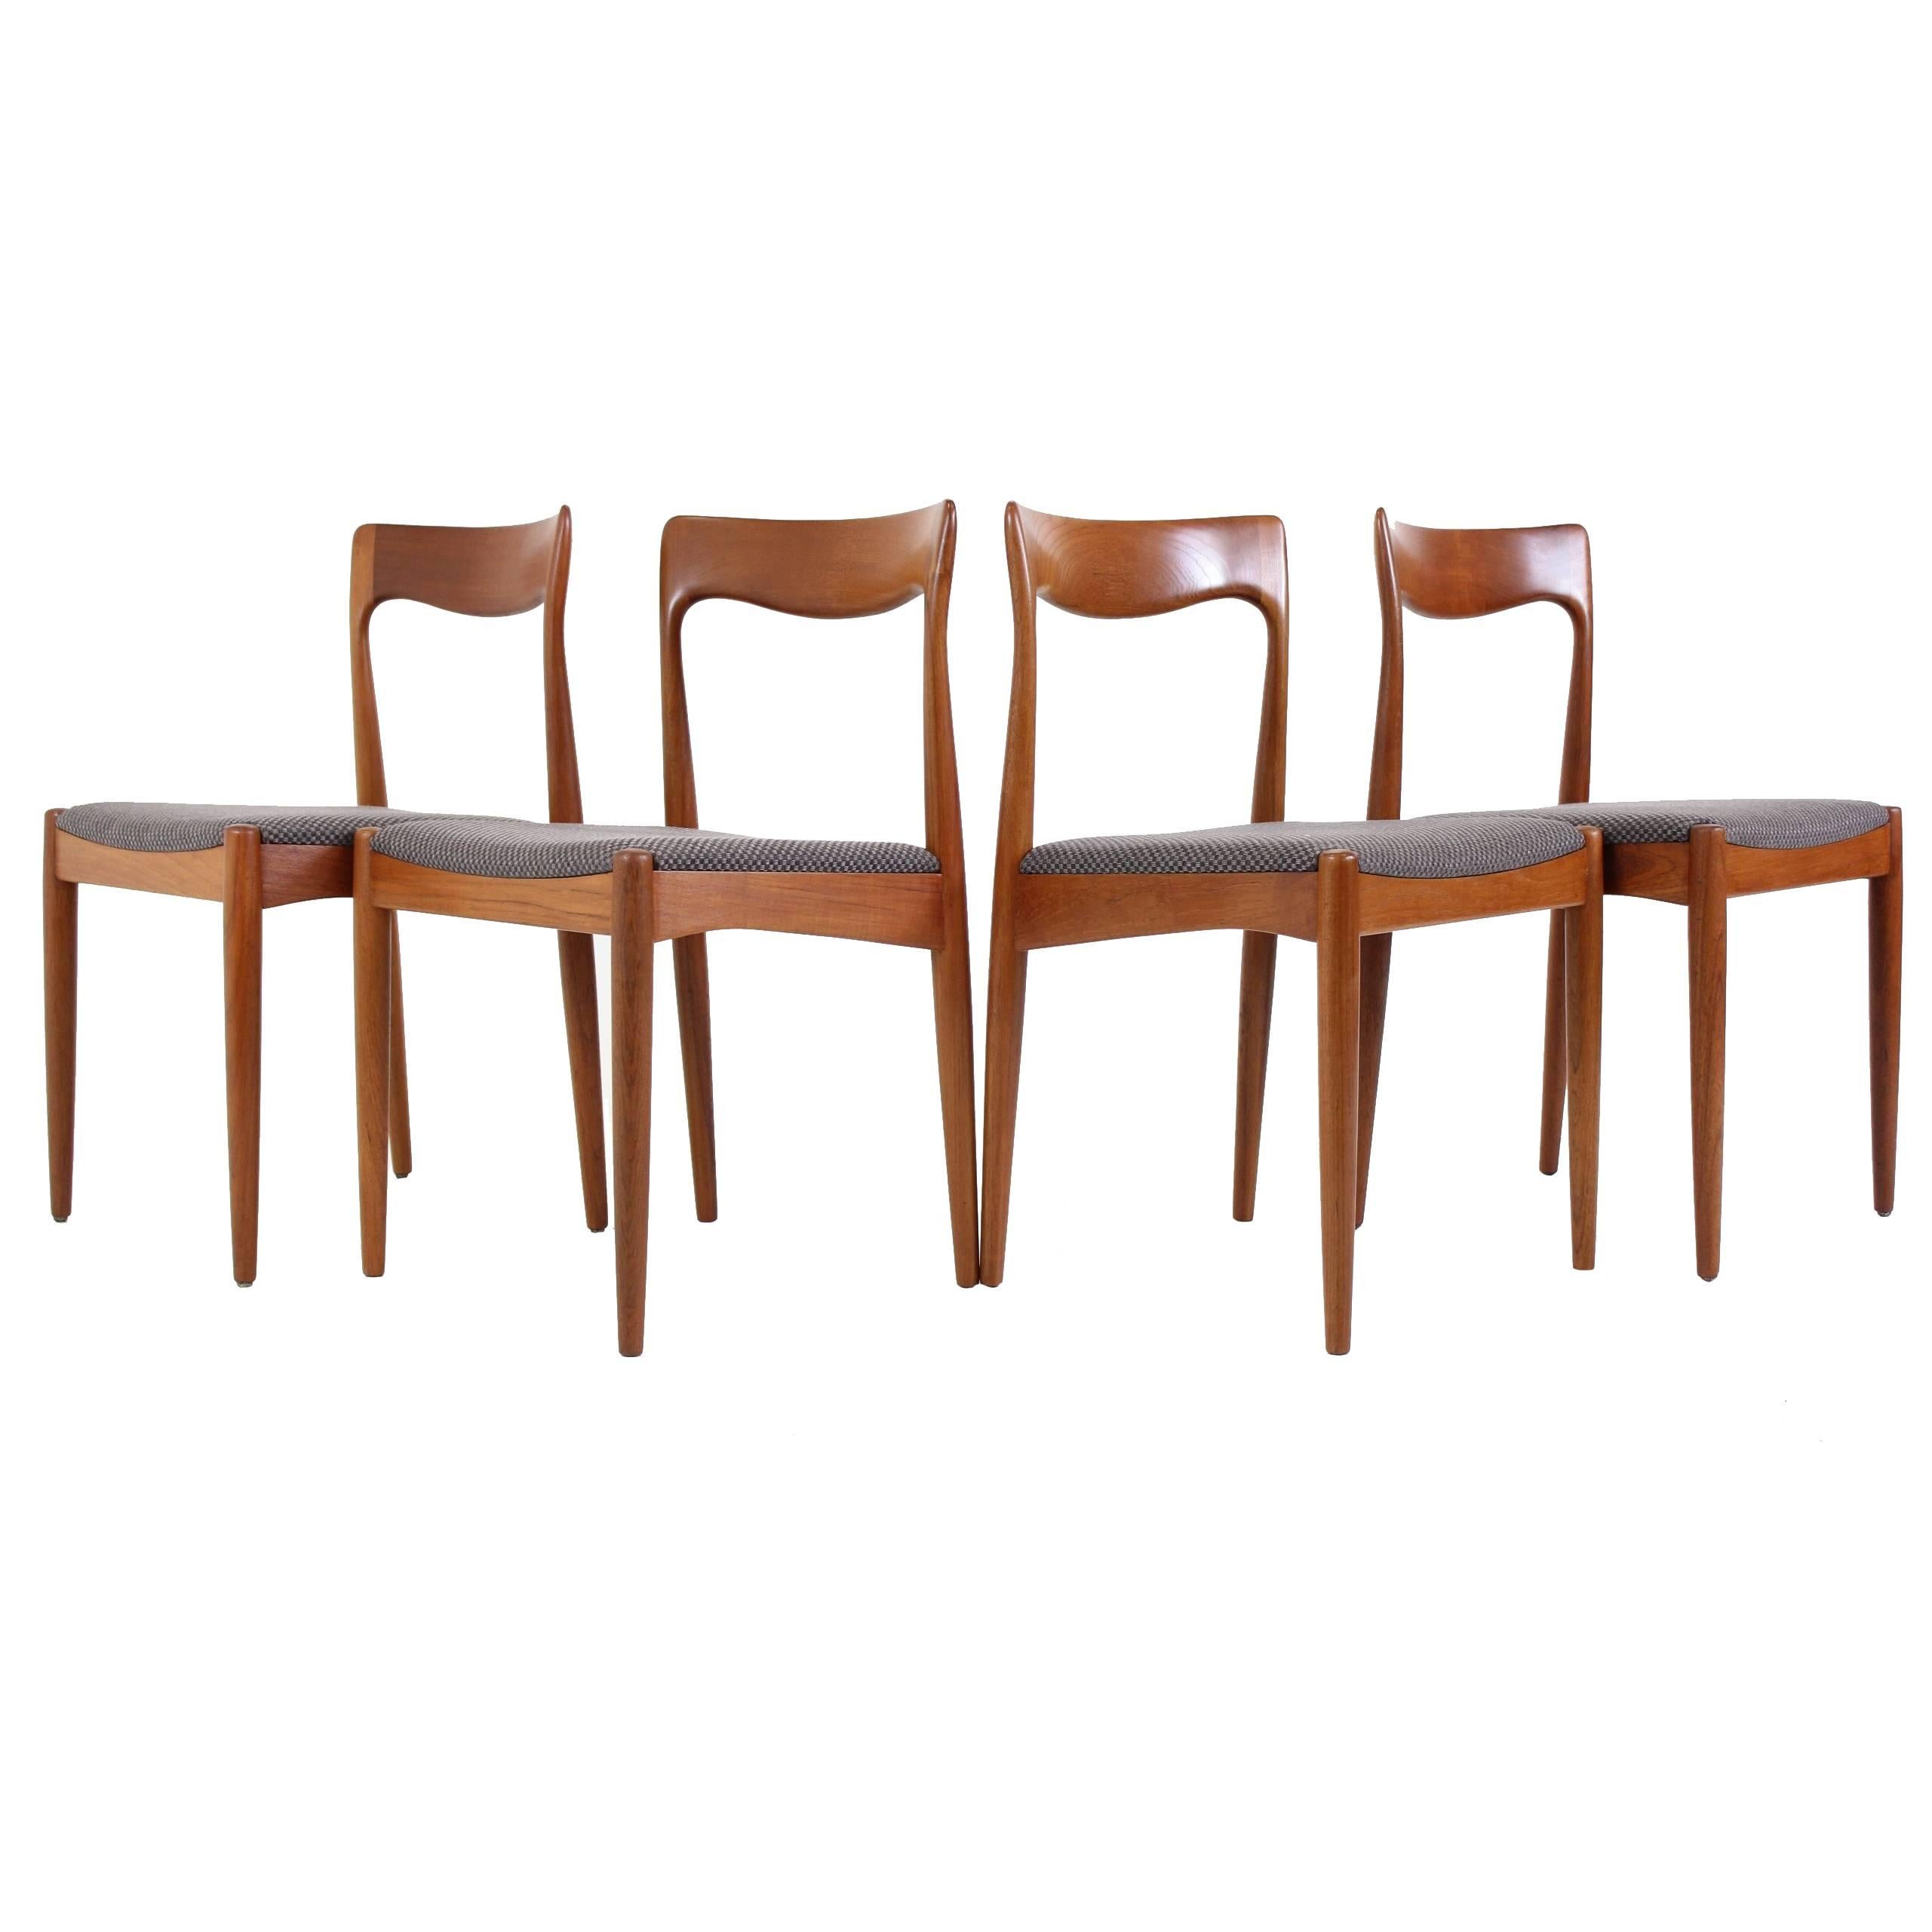 Set of Four Teak Dining Chair by Arne Vodder for Vamo Møbelfabrik